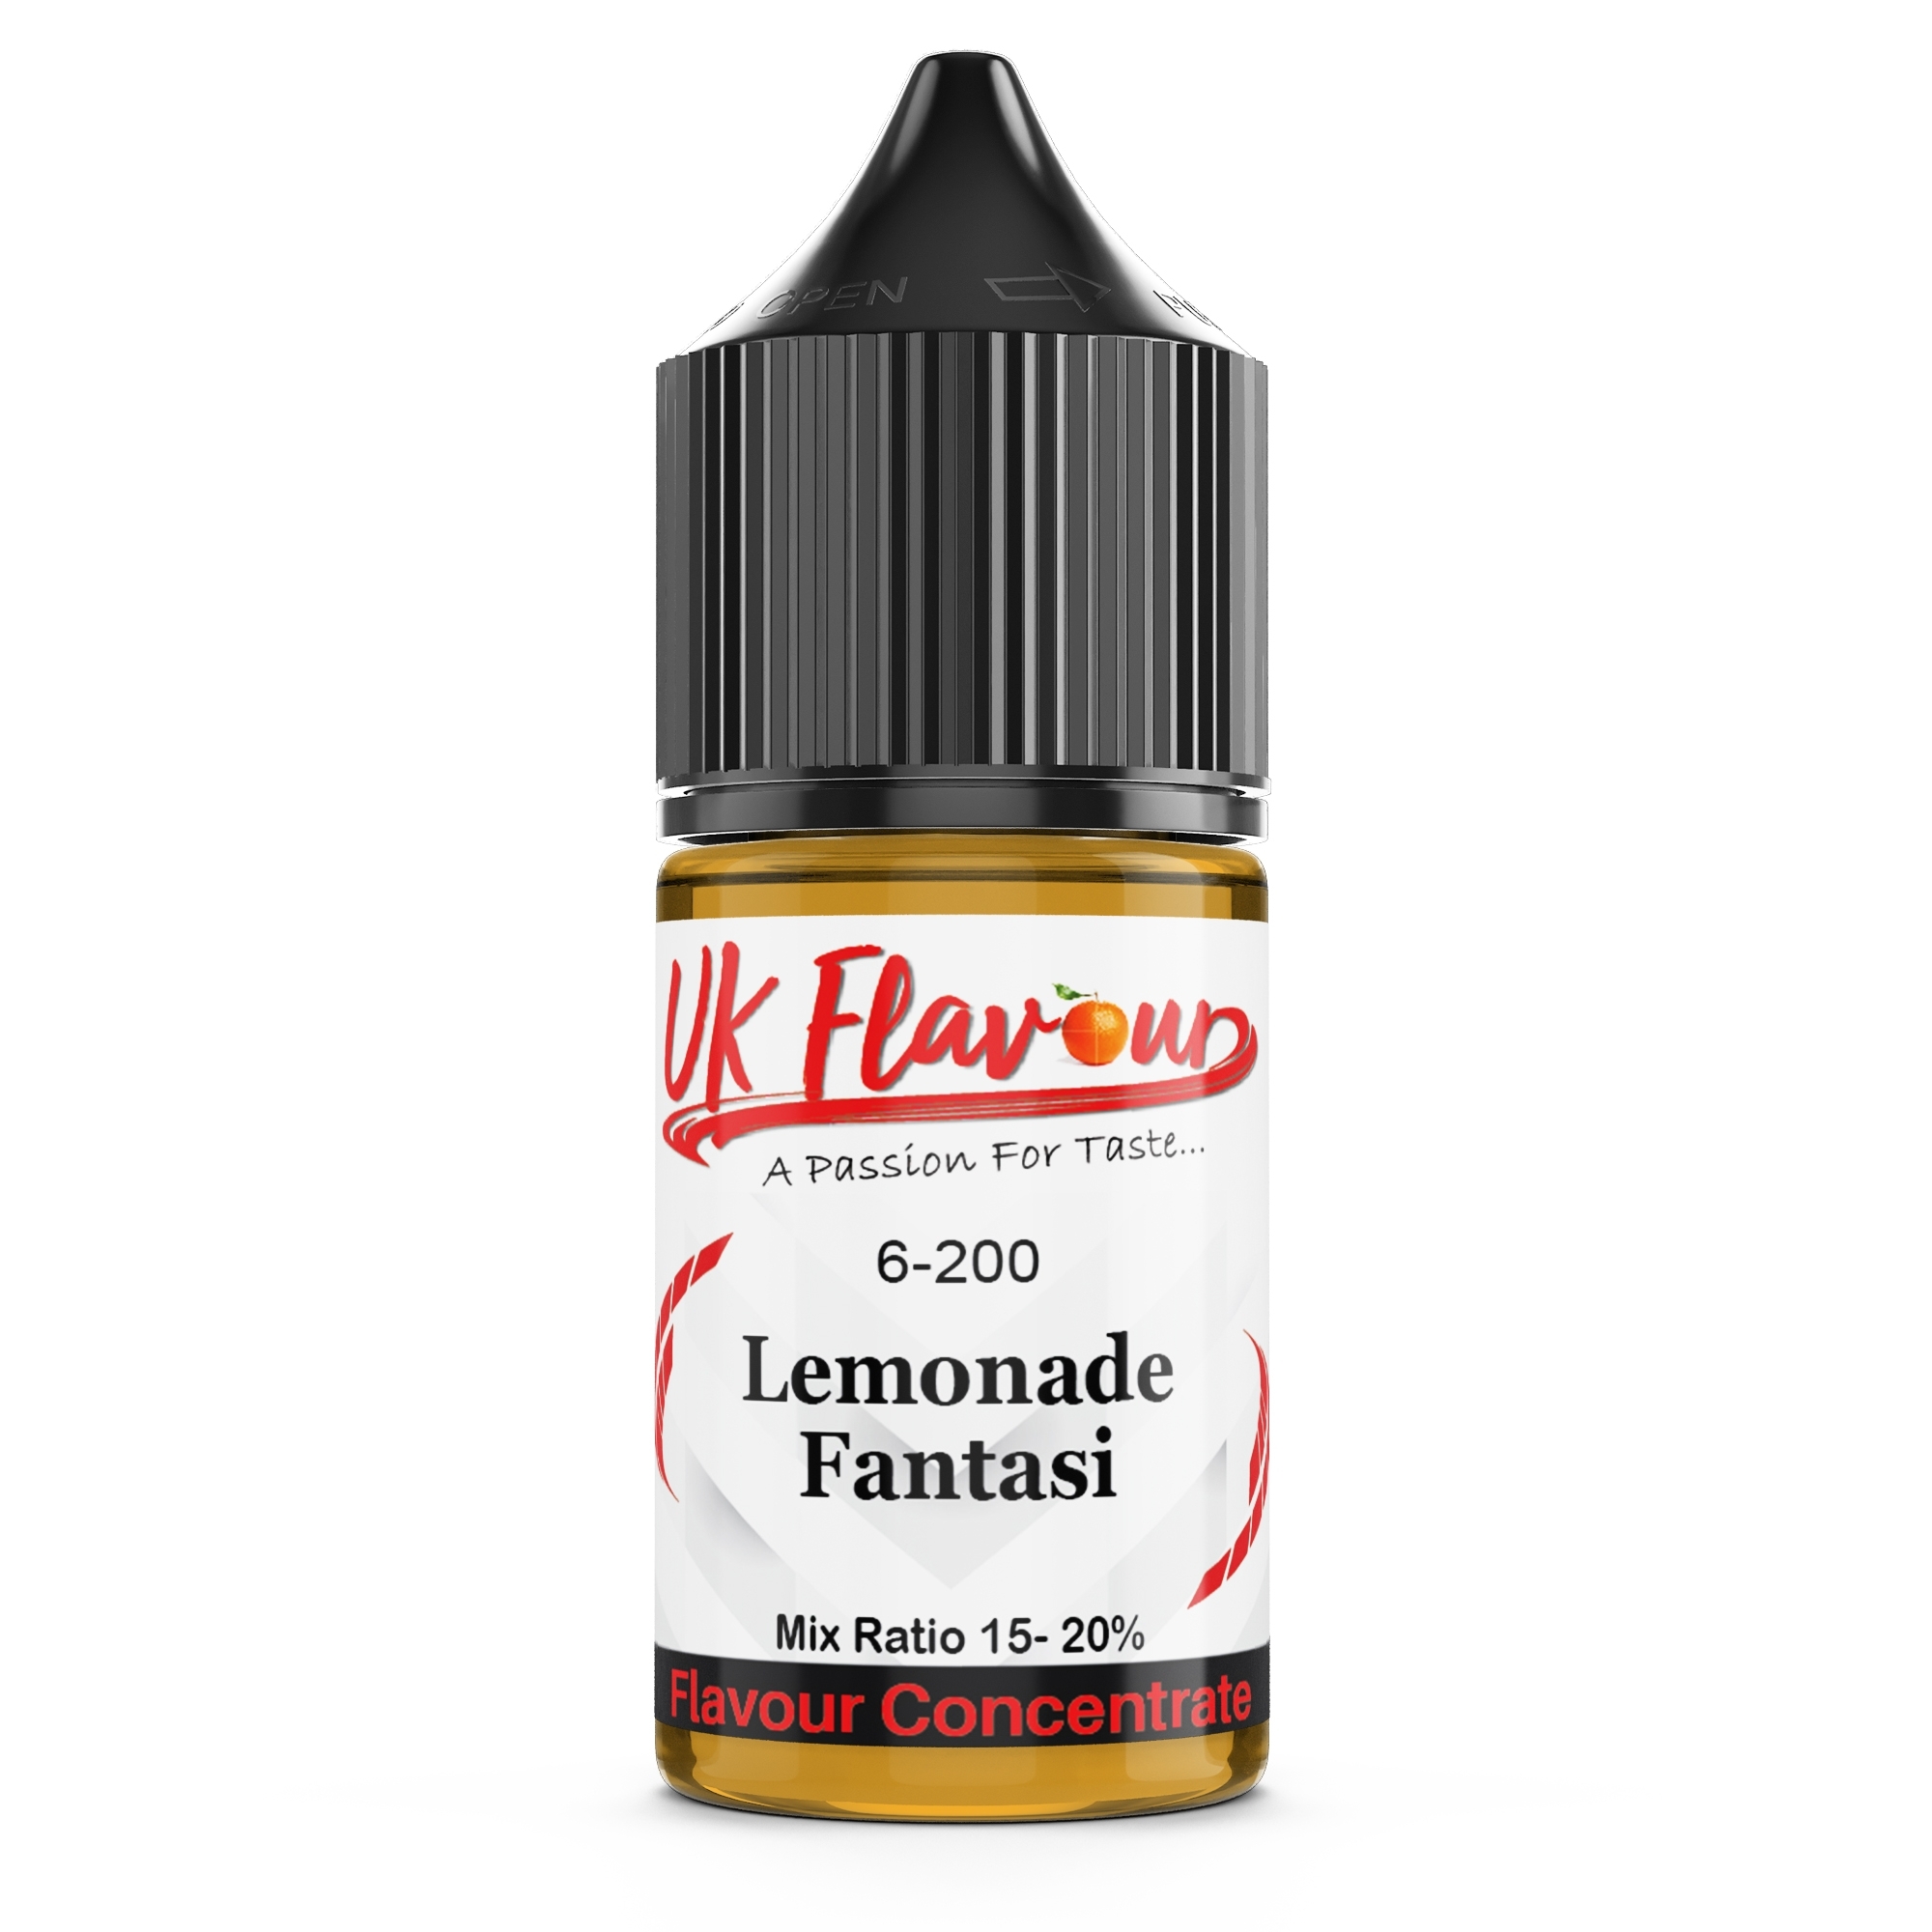 UK Flavour - Flavour concentrates 30ml Fantasi Lemonade